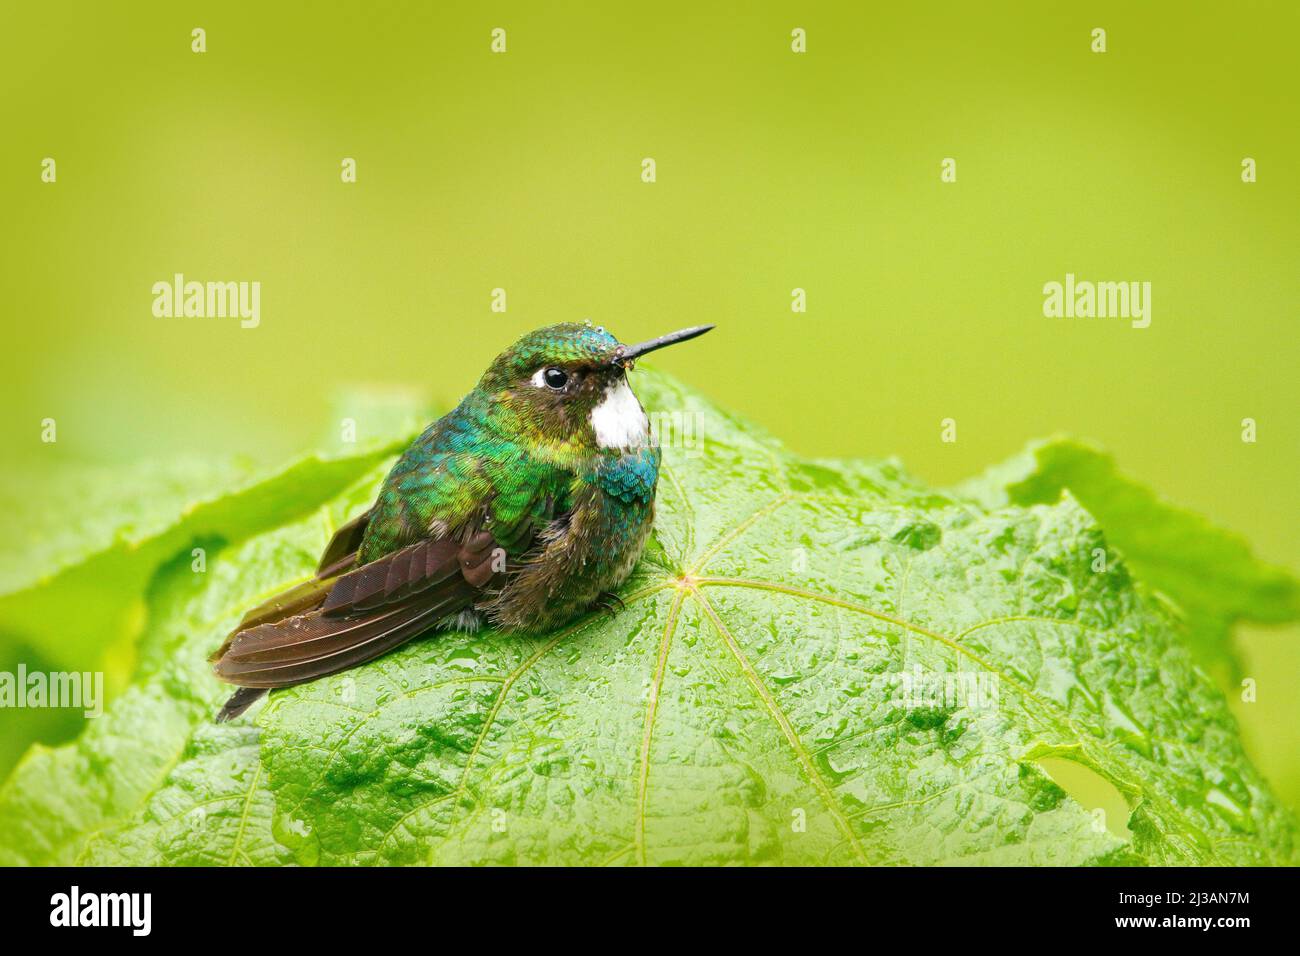 Niedlicher Vogel, der auf dem grünen Blatt sitzt, kleiner Vogel in den grünen Blättern, Tier im natürlichen Lebensraum, tropischer Bergwald, Tierwelt, Costa Rica. Stockfoto